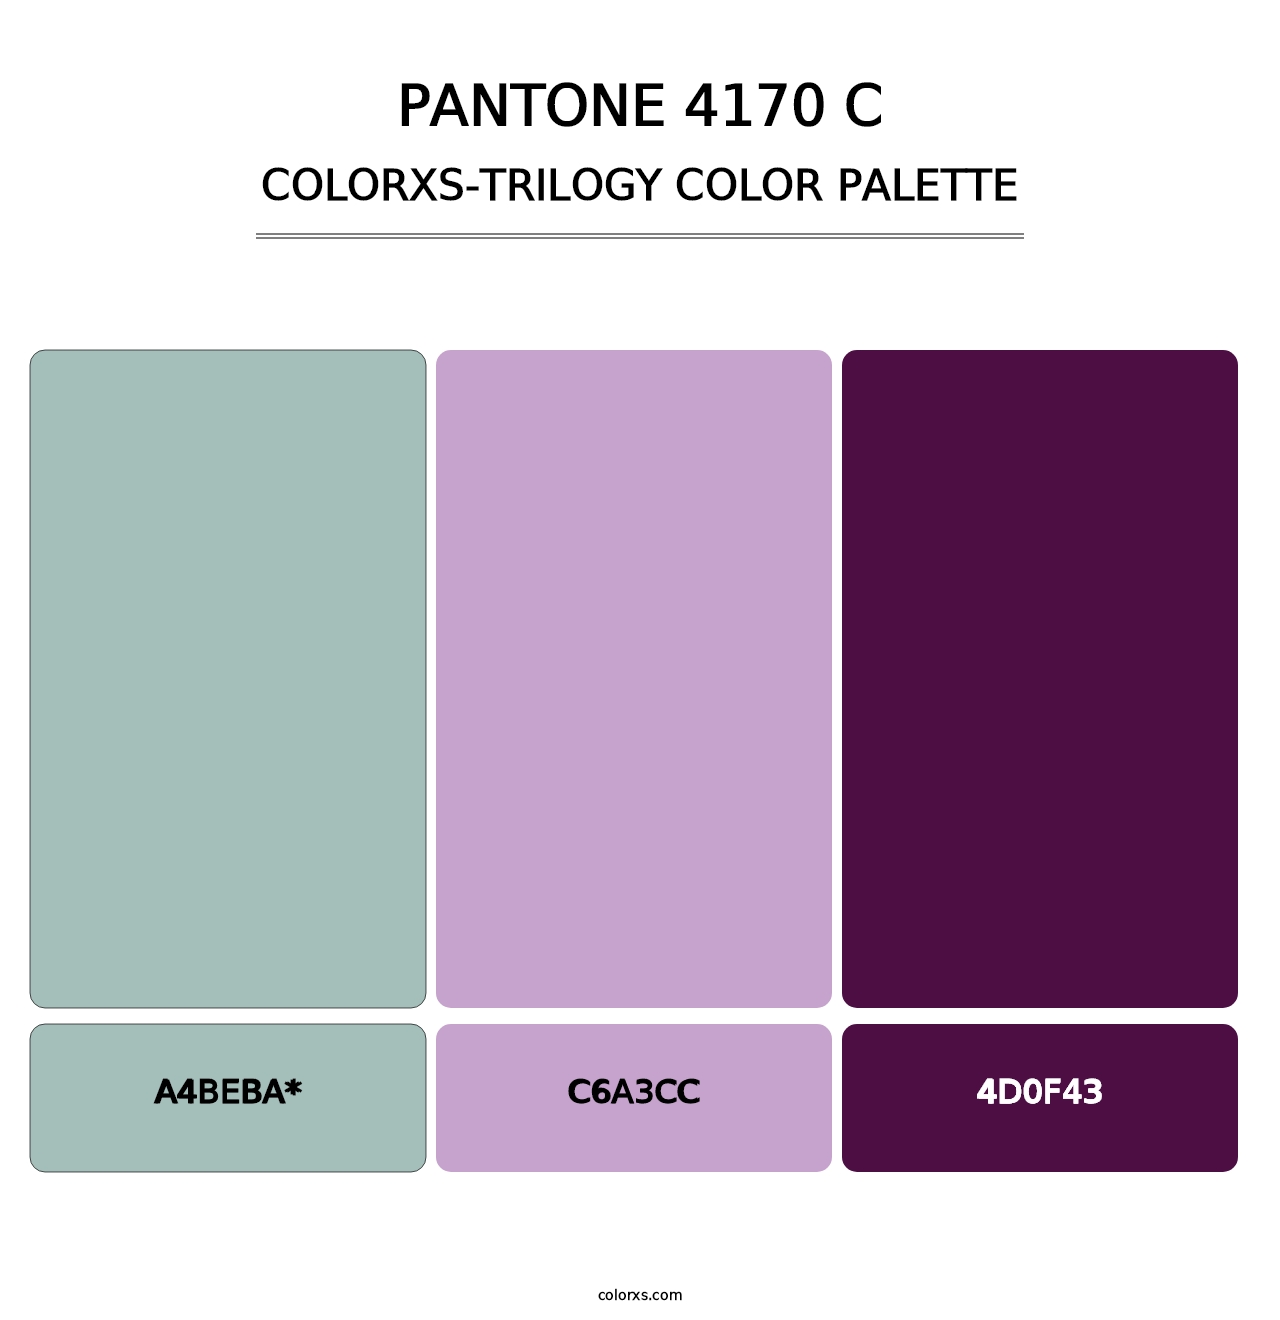 PANTONE 4170 C - Colorxs Trilogy Palette